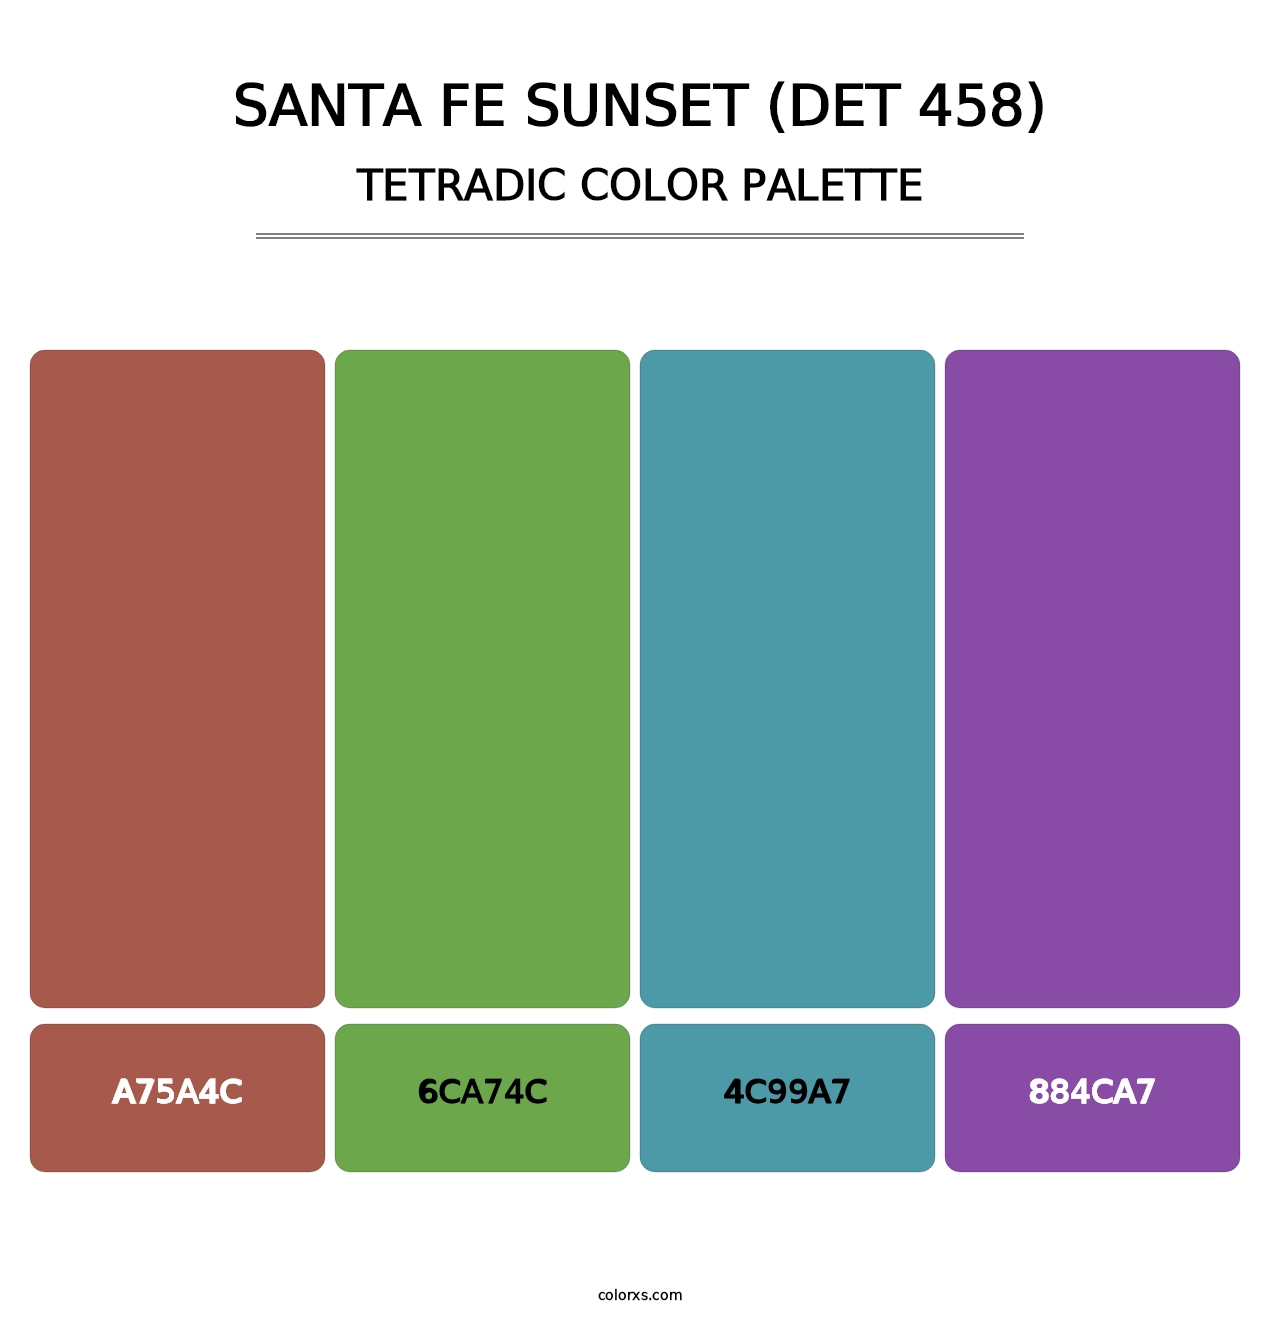 Santa Fe Sunset (DET 458) - Tetradic Color Palette